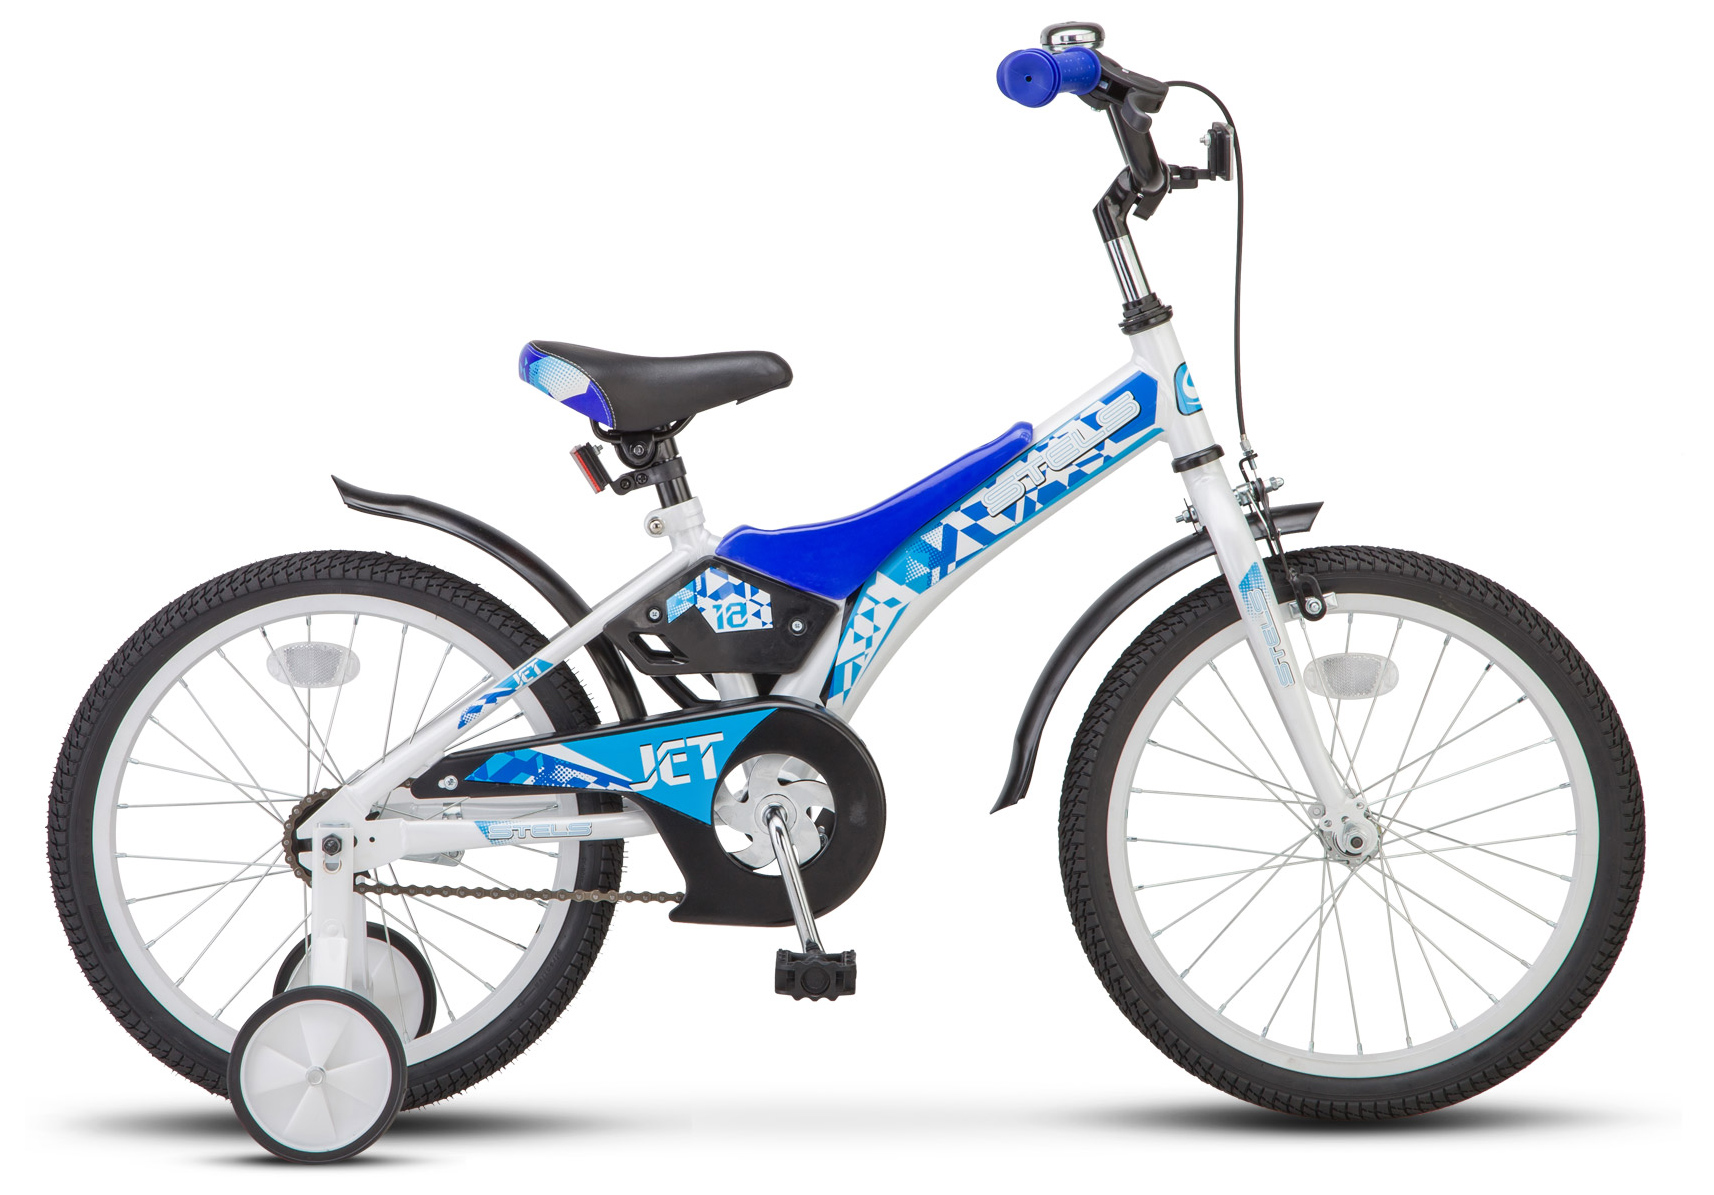  Отзывы о Детском велосипеде Stels Jet 18" (Z010) 2019